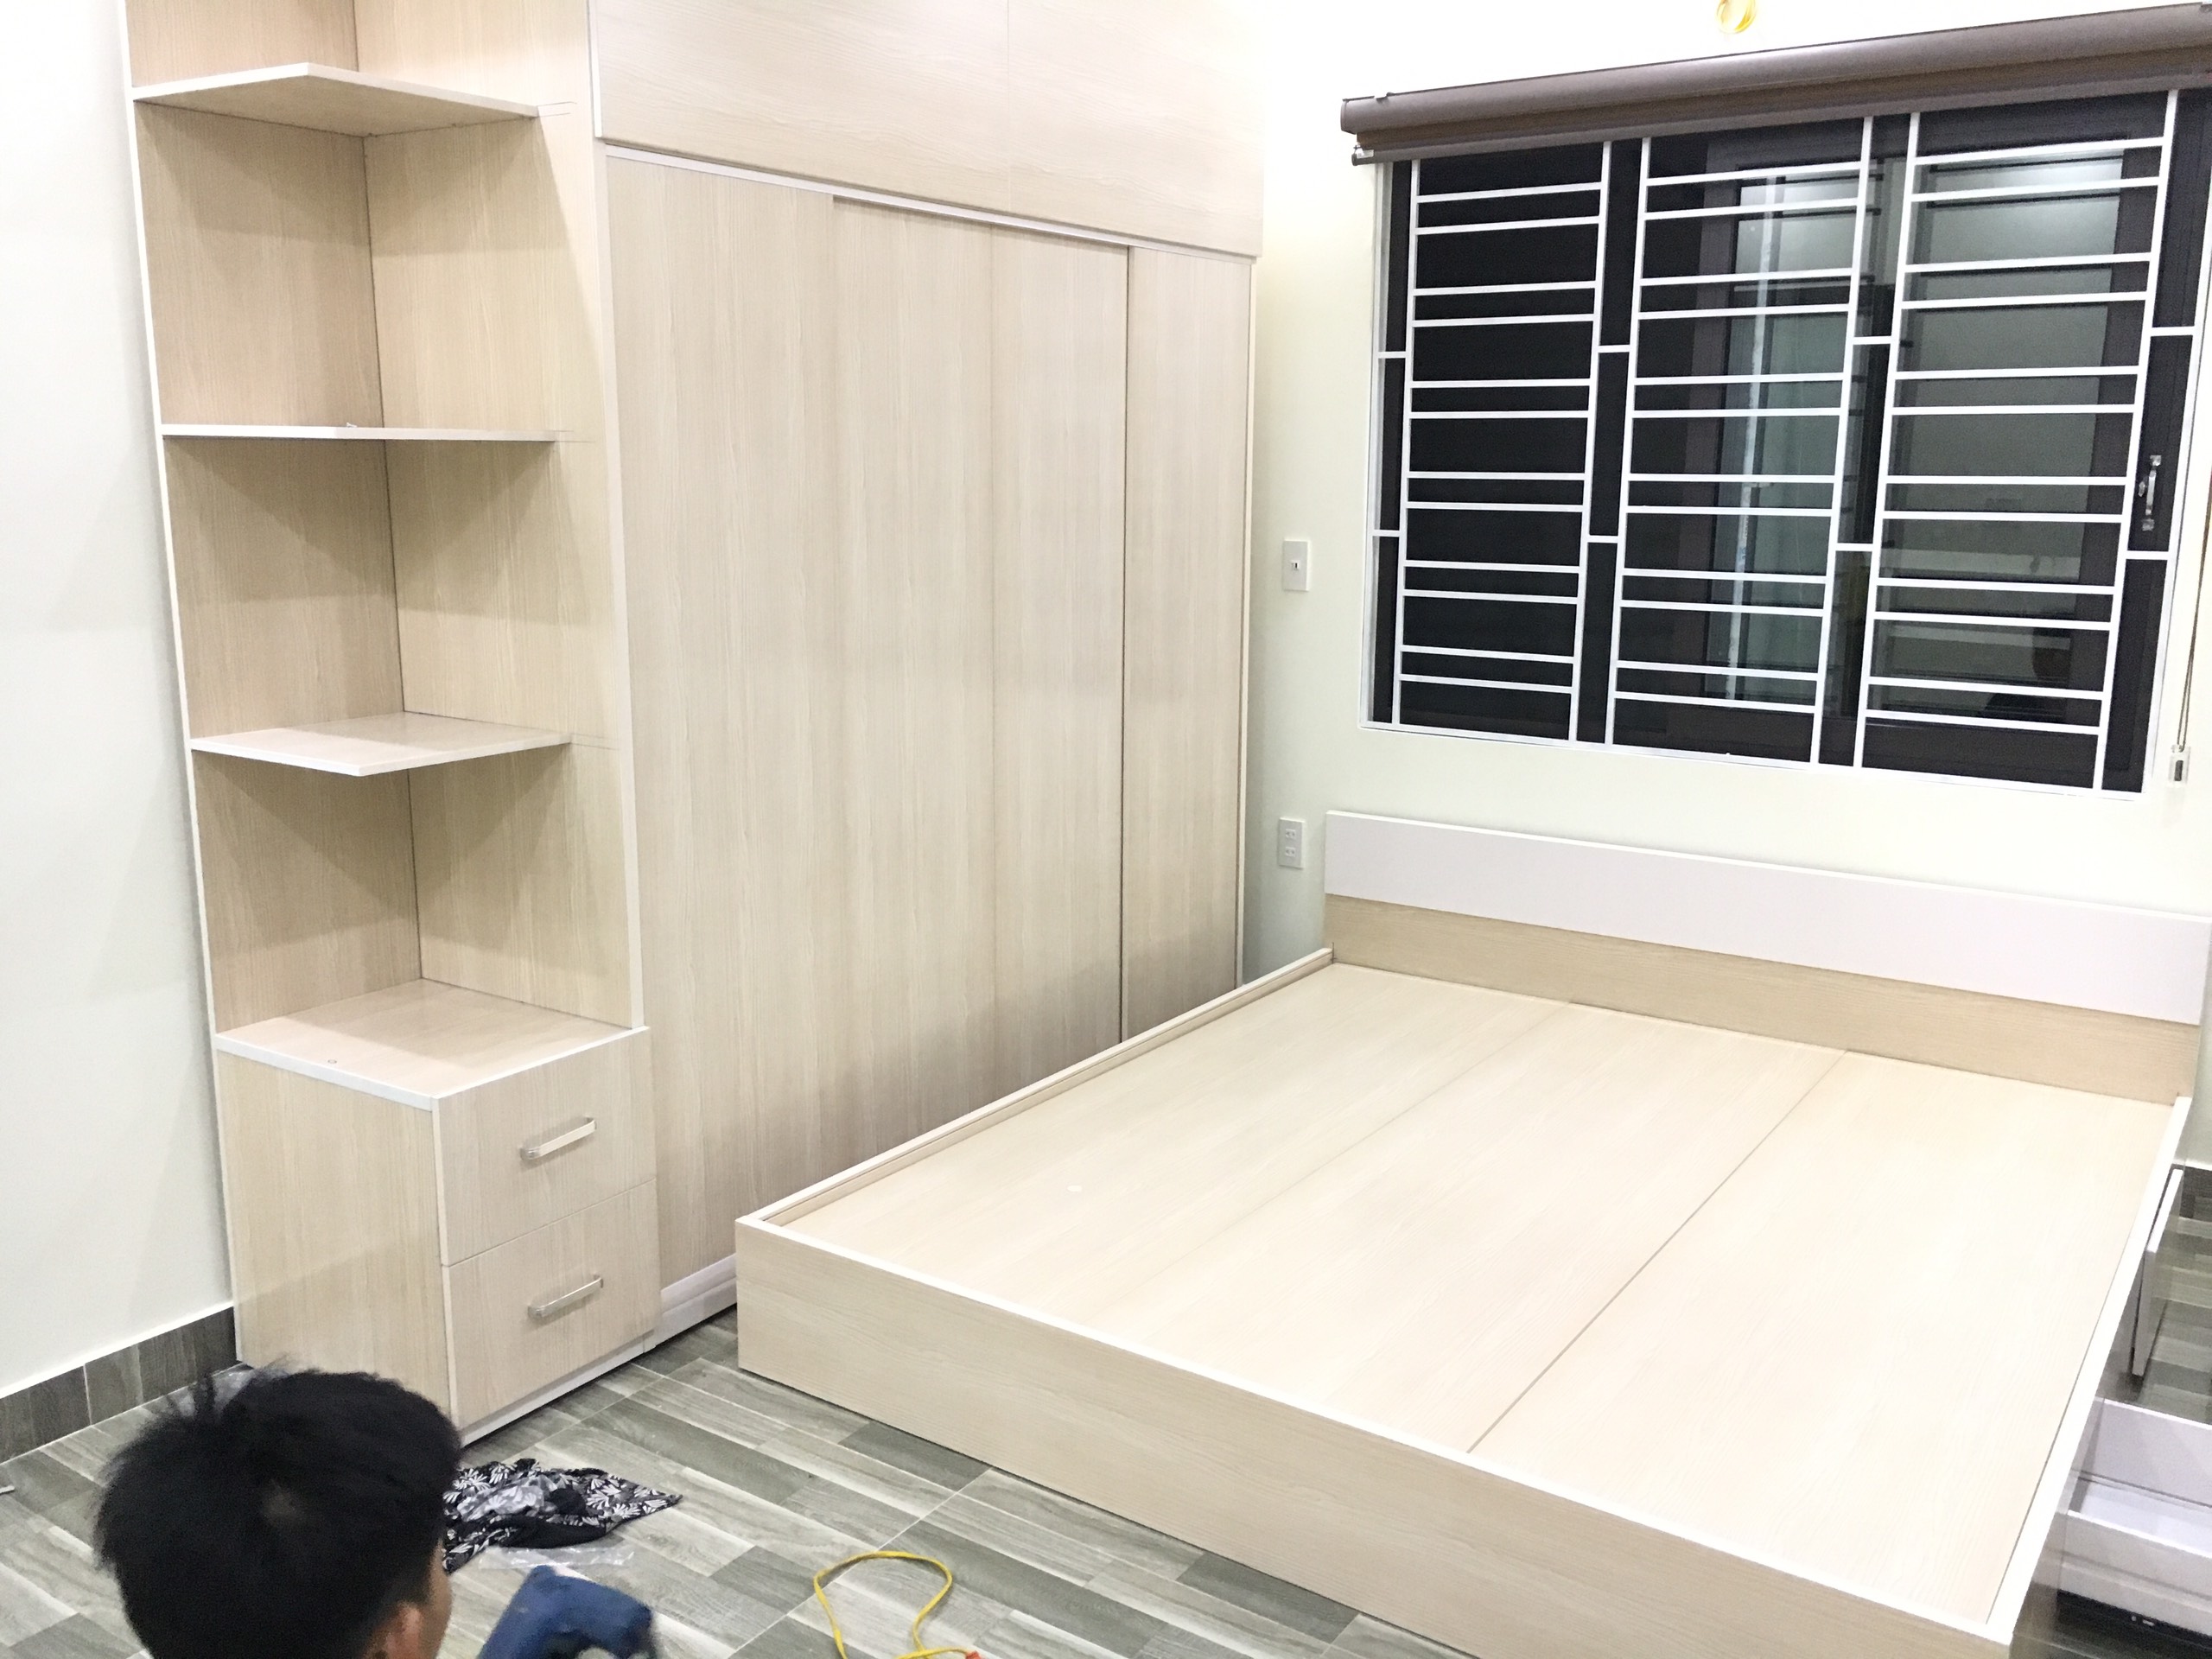 Tủ Nhựa Đài Loan: Tủ Nhựa Đài Loan mang lại sự tiện dụng và tiết kiệm không gian cho ngôi nhà của bạn. Chúng được thiết kế với chất liệu chất lượng cao và tích hợp với nhiều tính năng để tối ưu hóa không gian lưu trữ của bạn.